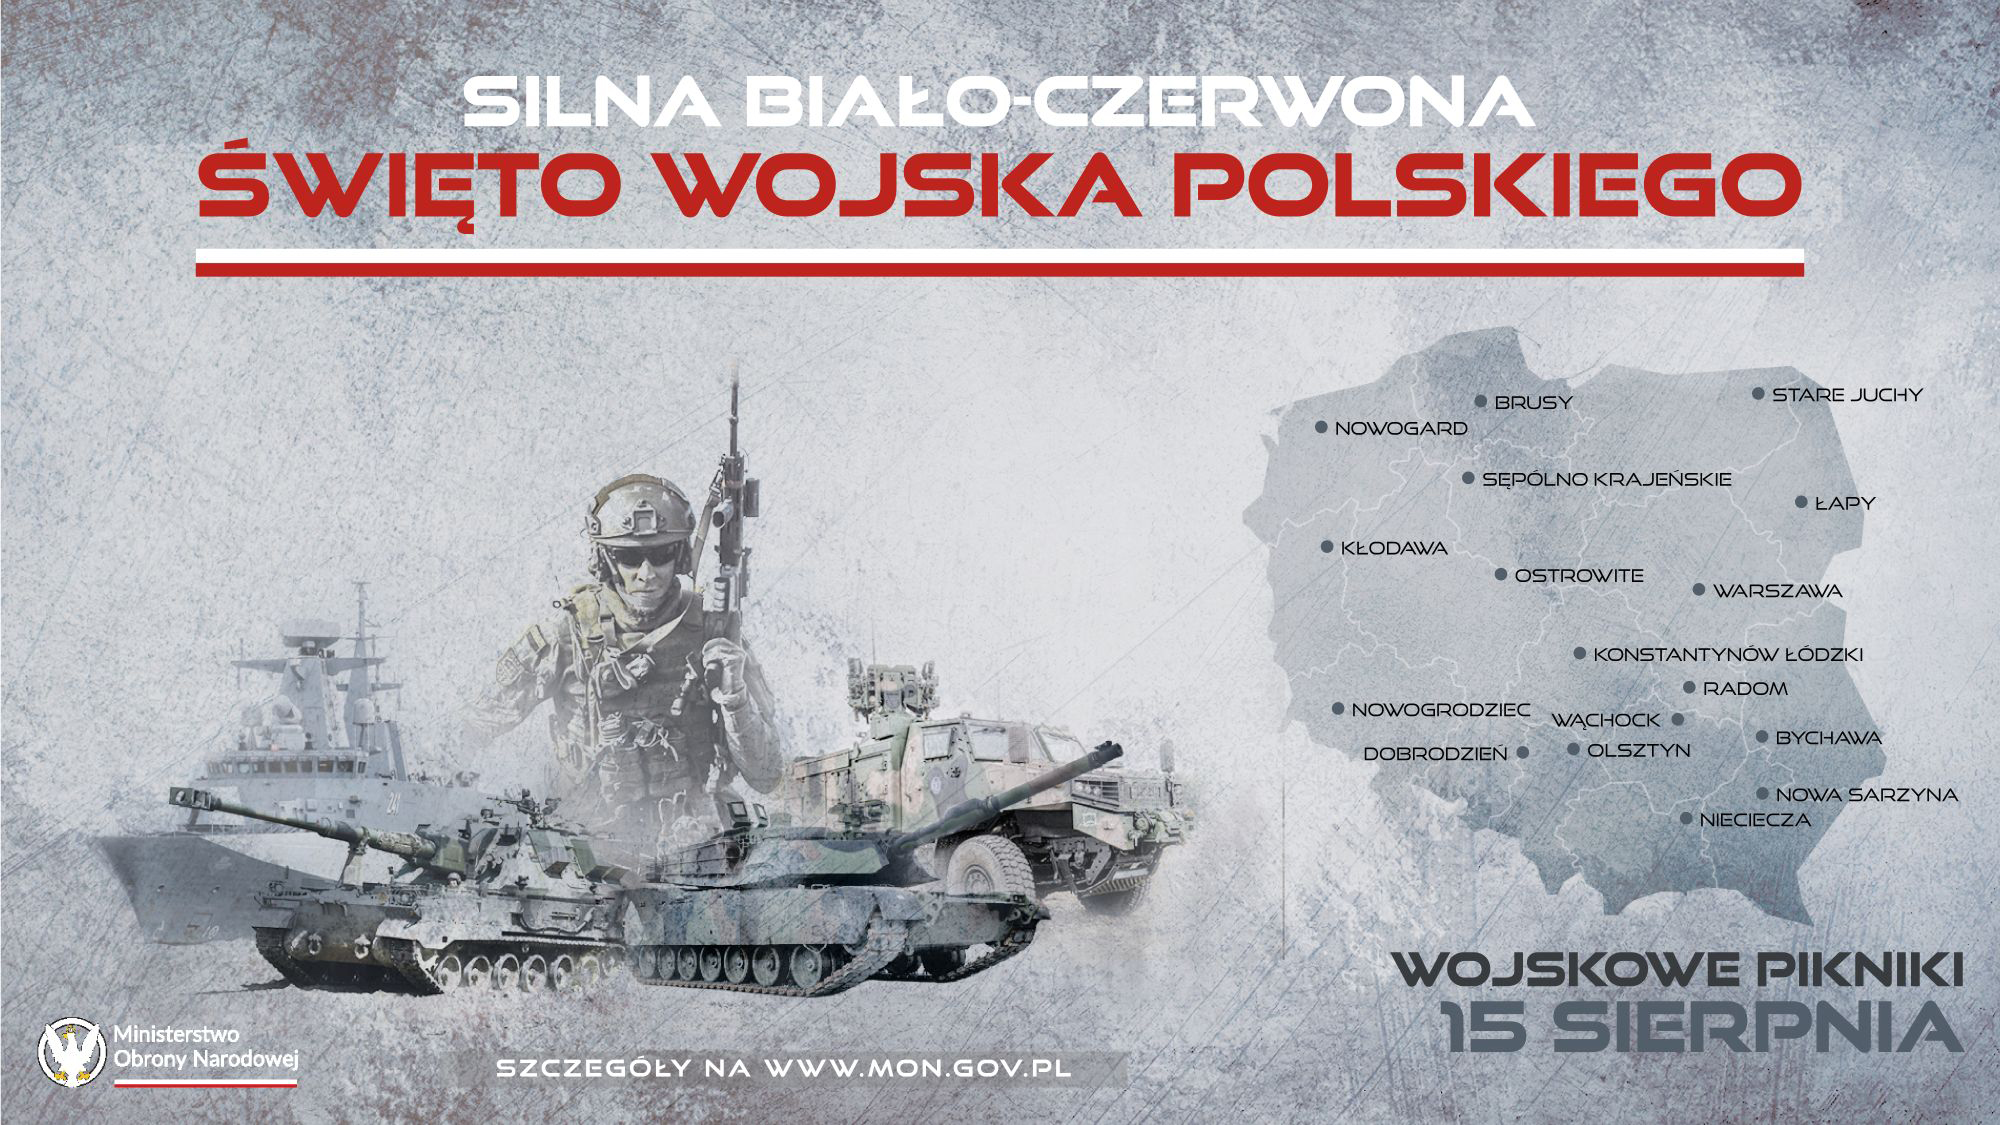 ŚWIĘTO WOJSKA POLSKIEGO - wojskowe pikniki - 15 sierpnia